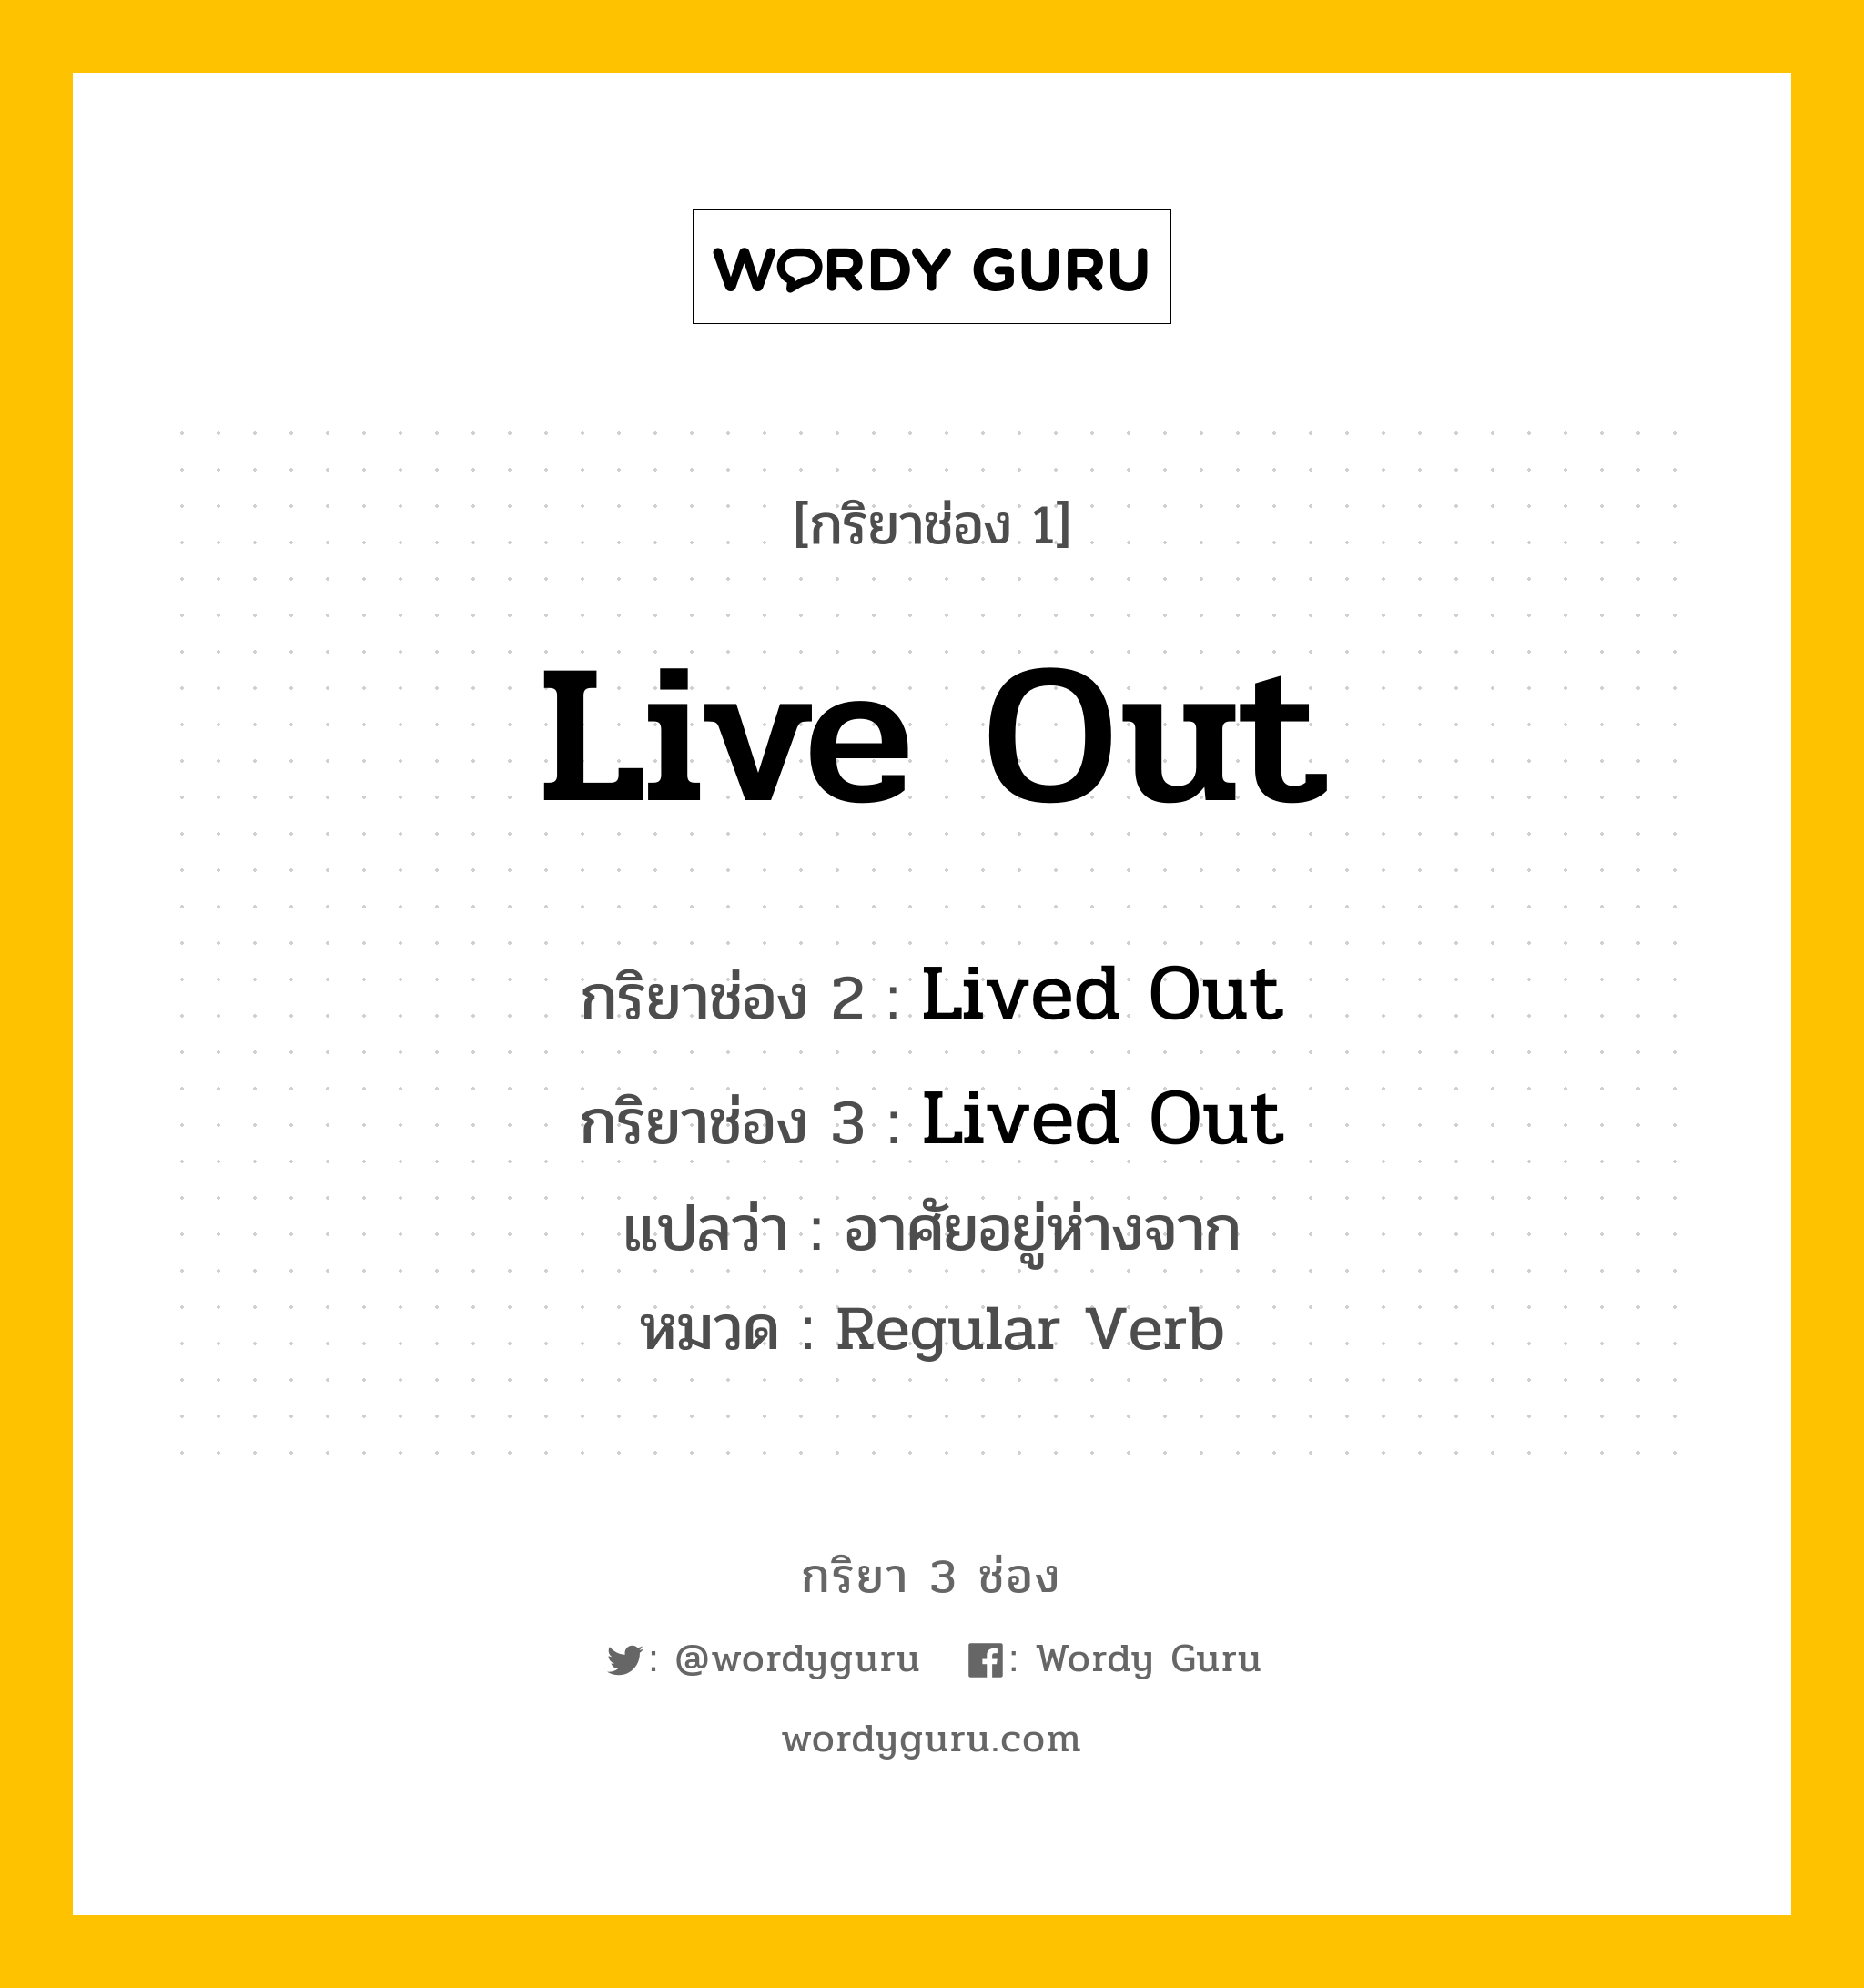 กริยา 3 ช่อง ของ Live Out คืออะไร? มาดูคำอ่าน คำแปลกันเลย, กริยาช่อง 1 Live Out กริยาช่อง 2 Lived Out กริยาช่อง 3 Lived Out แปลว่า อาศัยอยู่ห่างจาก หมวด Regular Verb หมวด Regular Verb